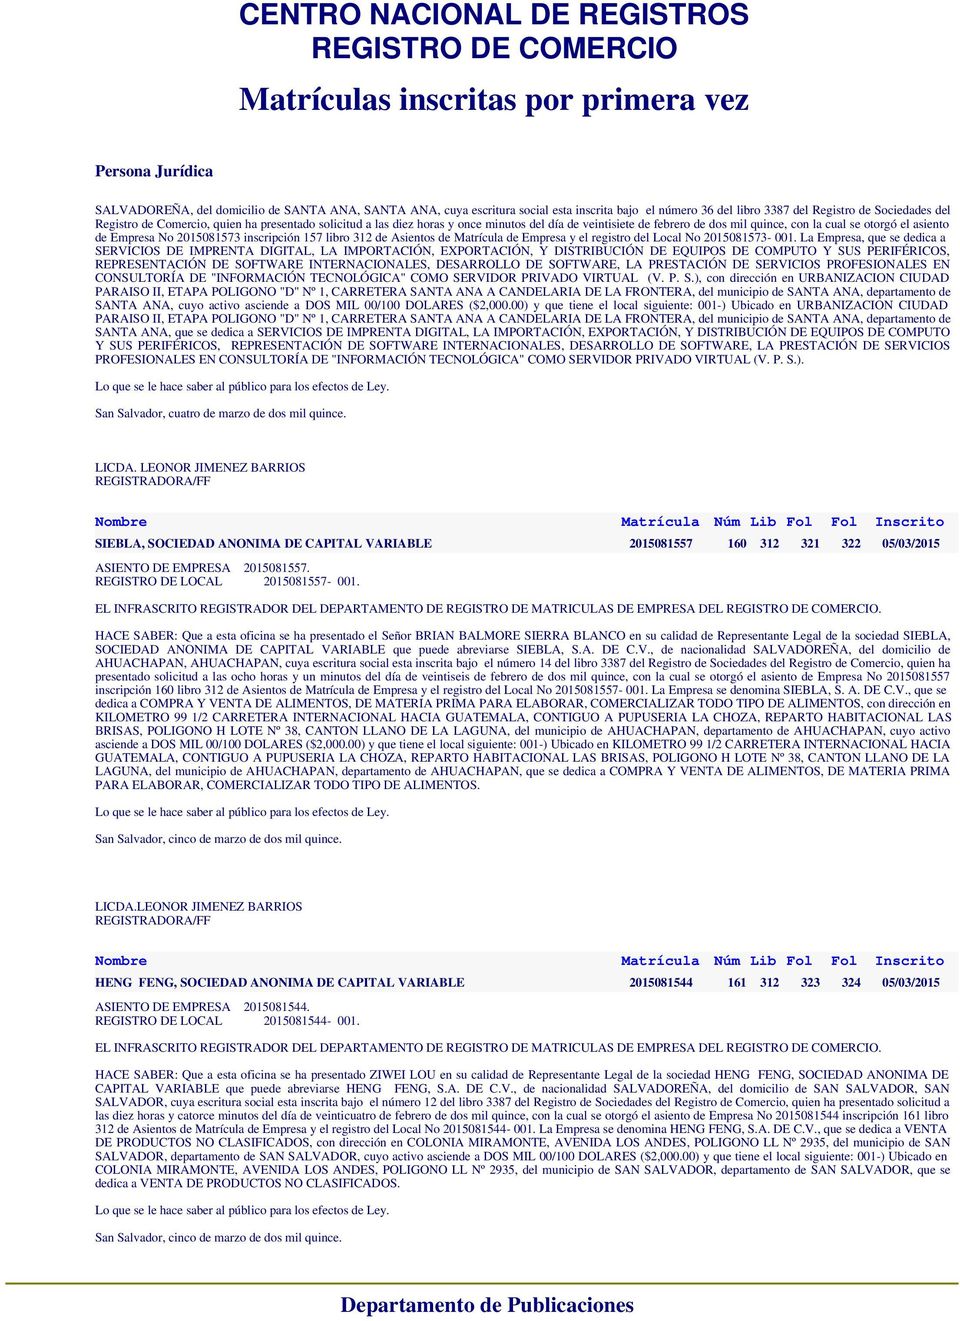 libro de Asientos de de Empresa y el registro del Local No 2015081573-001.